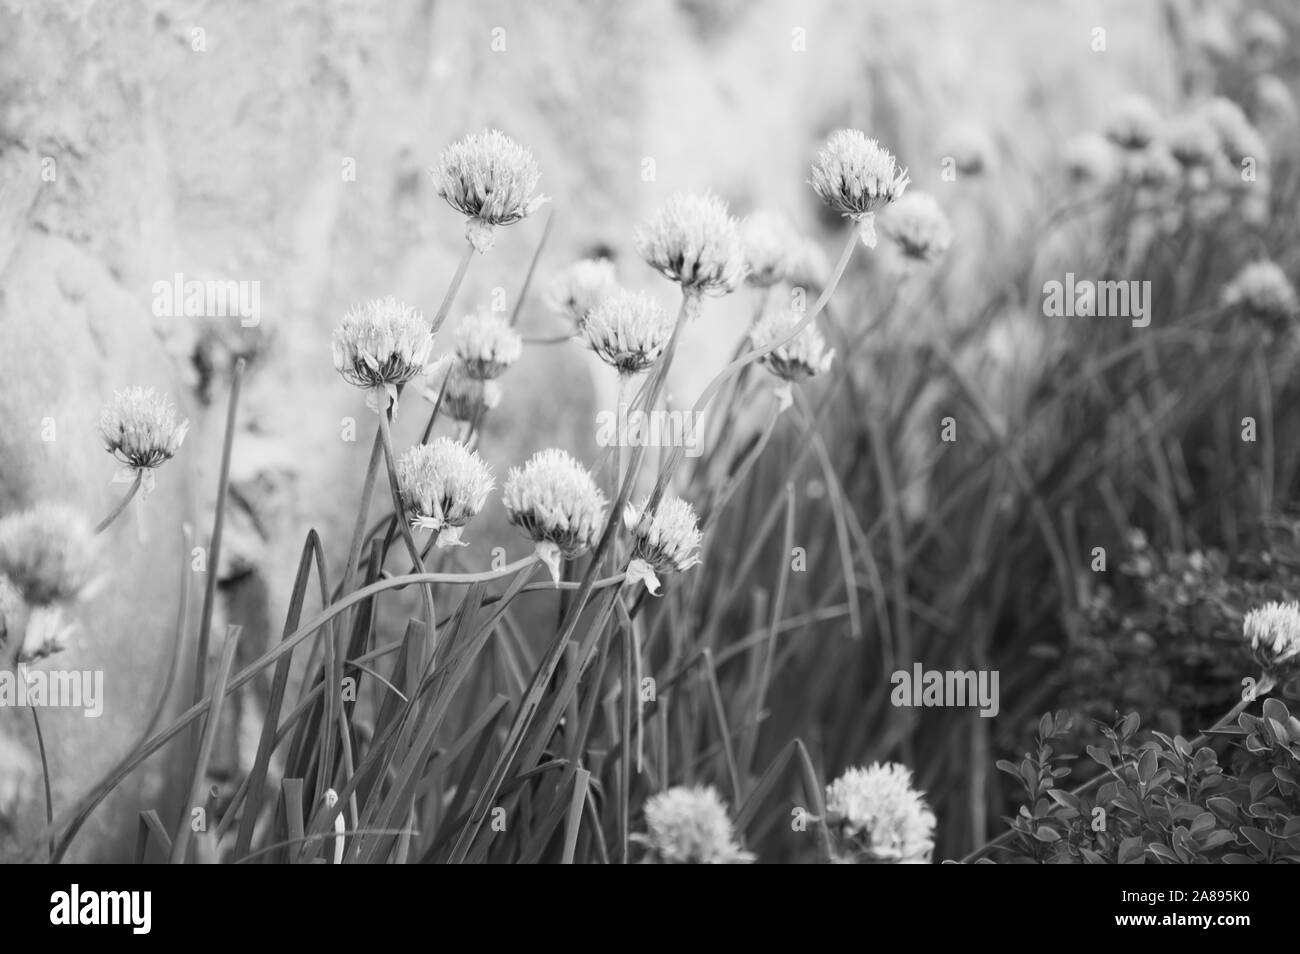 Allium fiori piantati nel giardino decorativo accanto al vecchio muro di pietra. Soft foto in bianco e nero Foto Stock